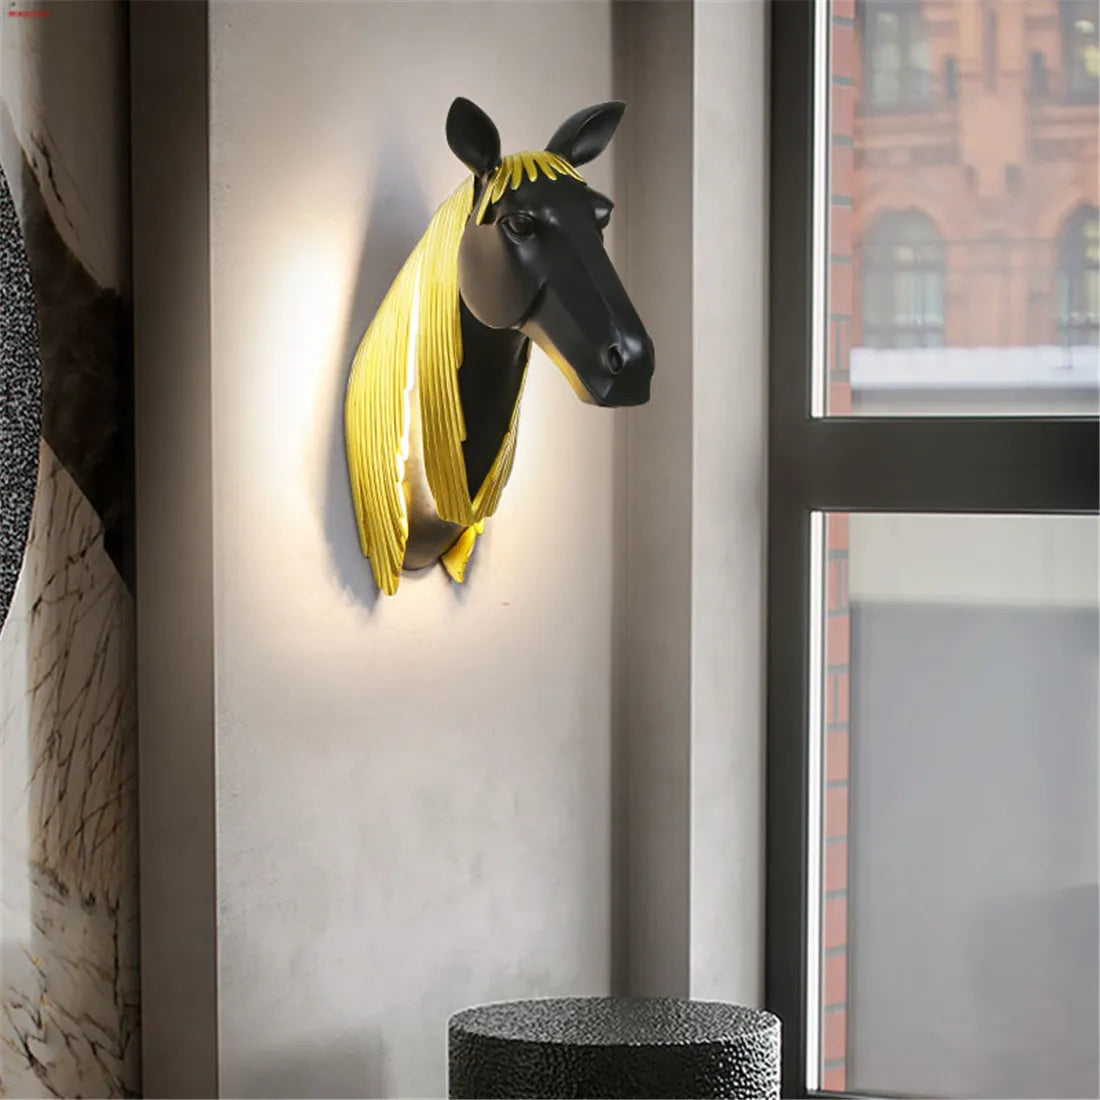 Art Deco Resin Luminous Horse Led Wall Lamp For Corridor Hotel Hallway